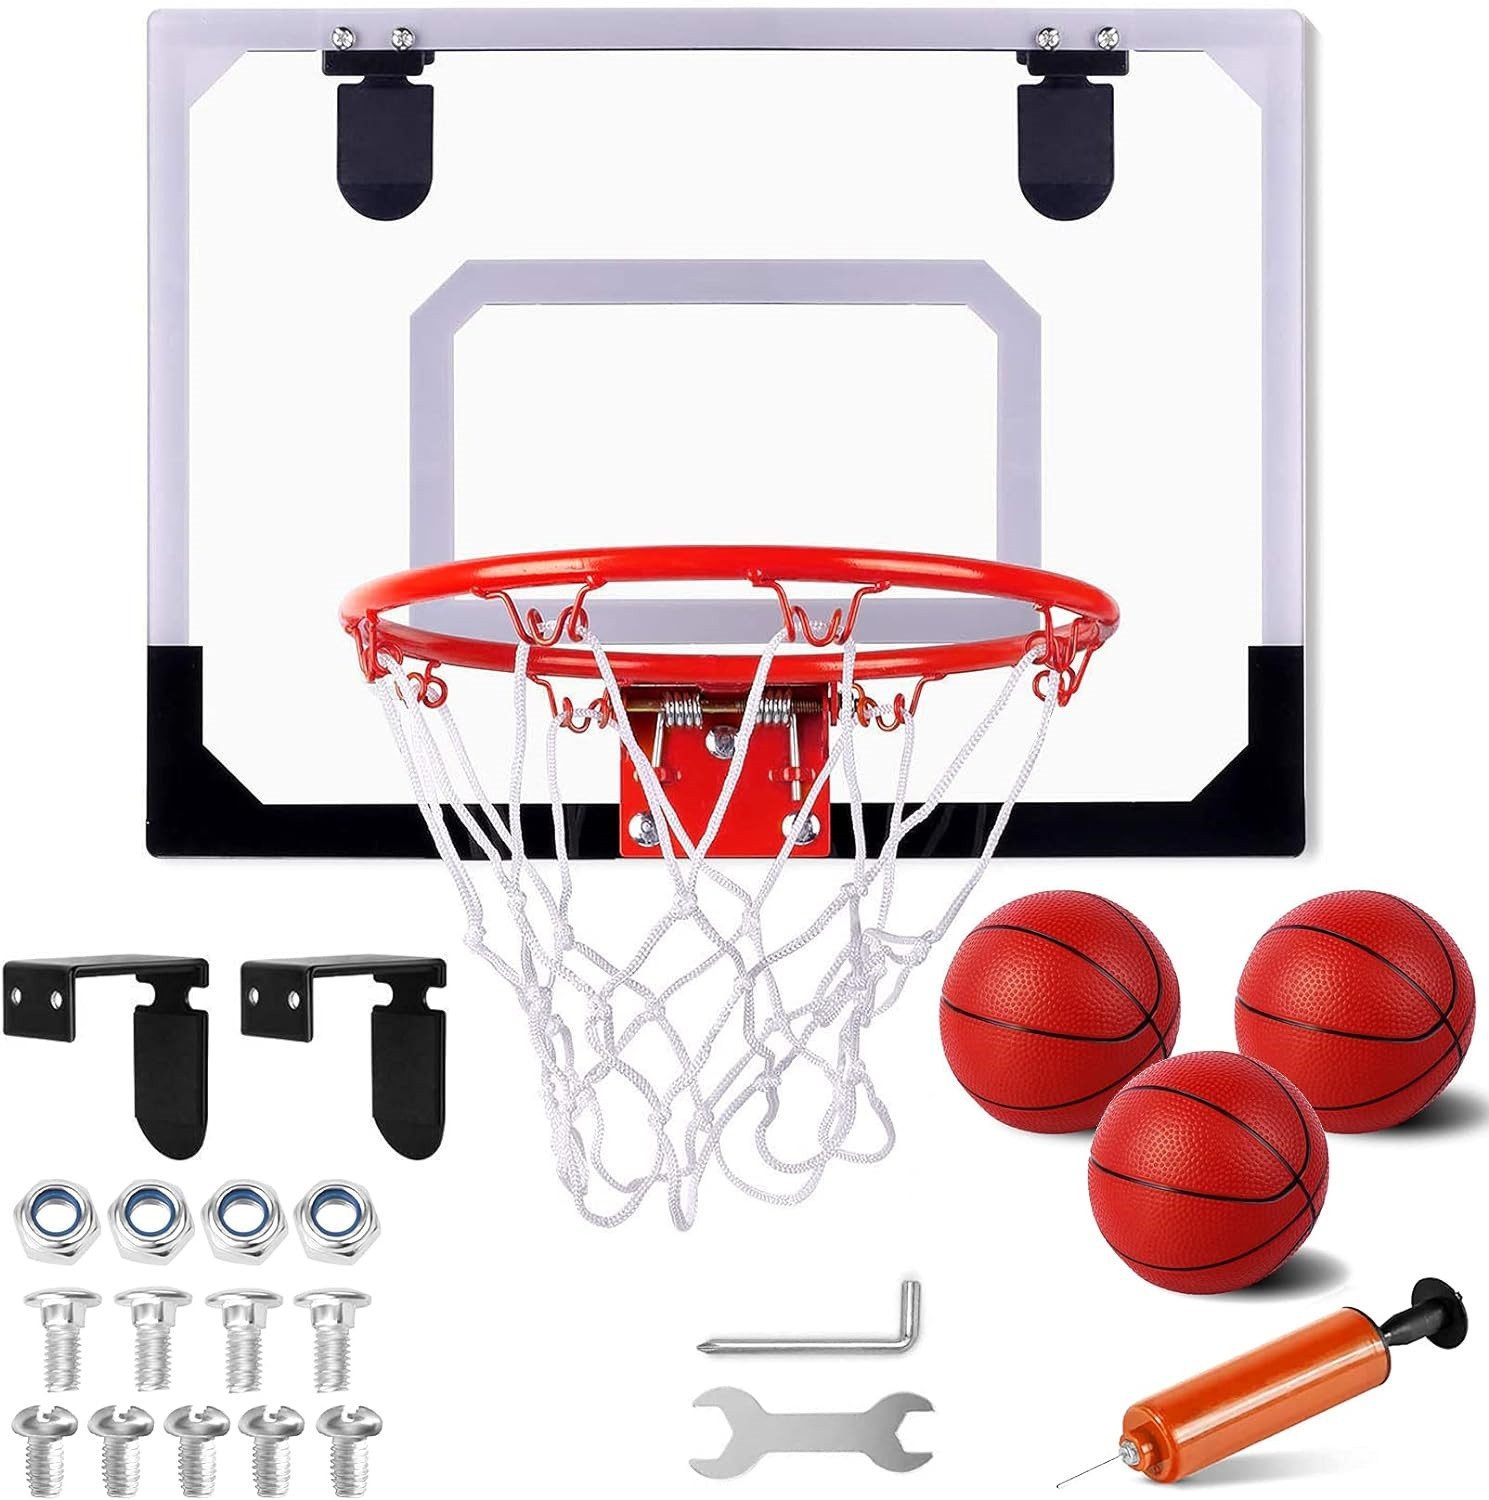 Basketballkorb Mini Basketballkorb zum Einhängen 3 x Mini Basketball Indoor Kinder